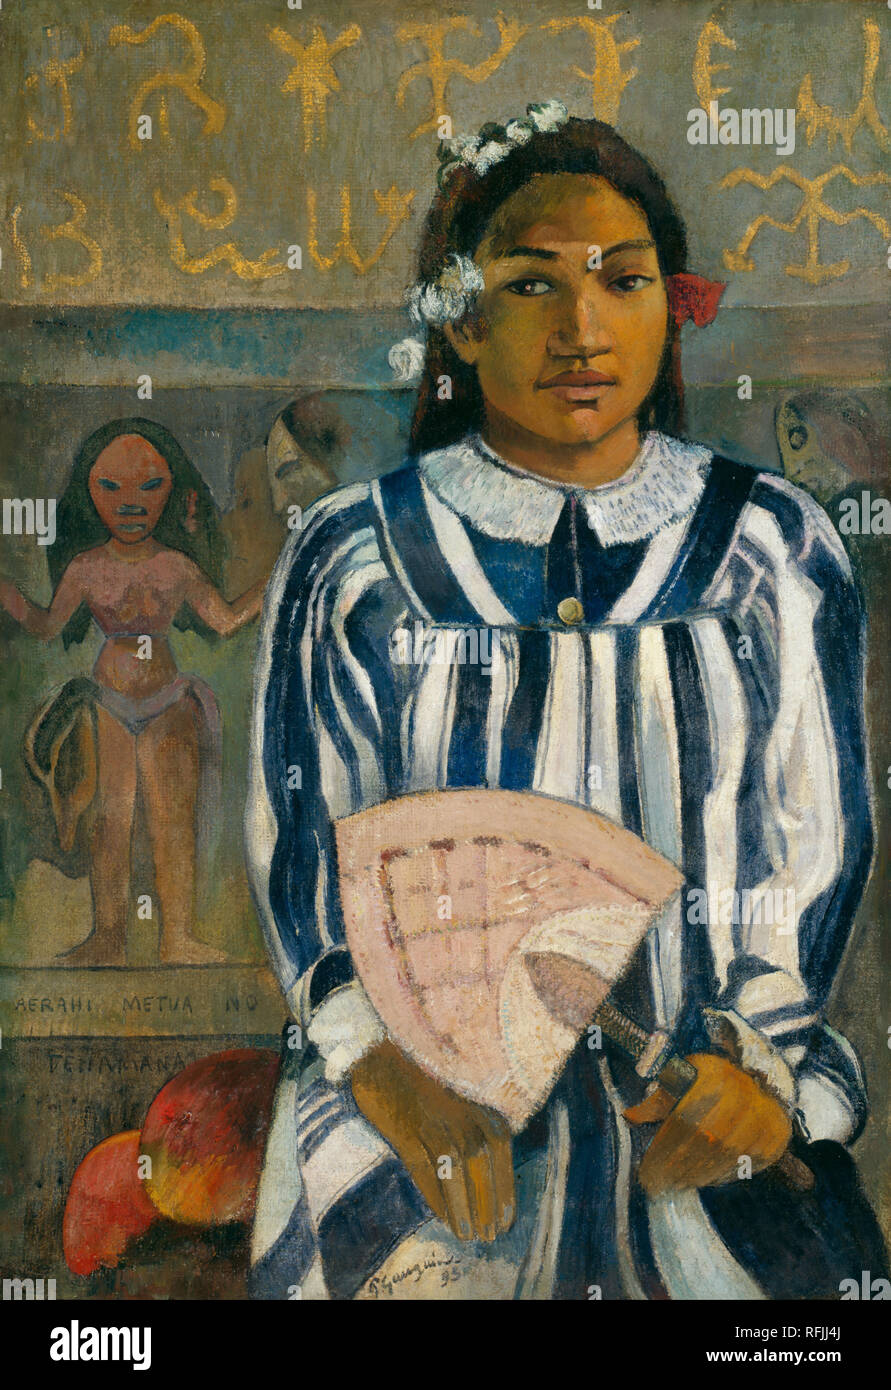 Merahi metua no Tehamana / Teha'amana a de nombreux parents, ou les ancêtres de Tehamana. Date/période : 1893. La peinture. Huile sur toile. Hauteur : 76,3 cm (30 in) ; Largeur : 54,3 cm (21,3 in). Auteur : Paul Gauguin. Banque D'Images